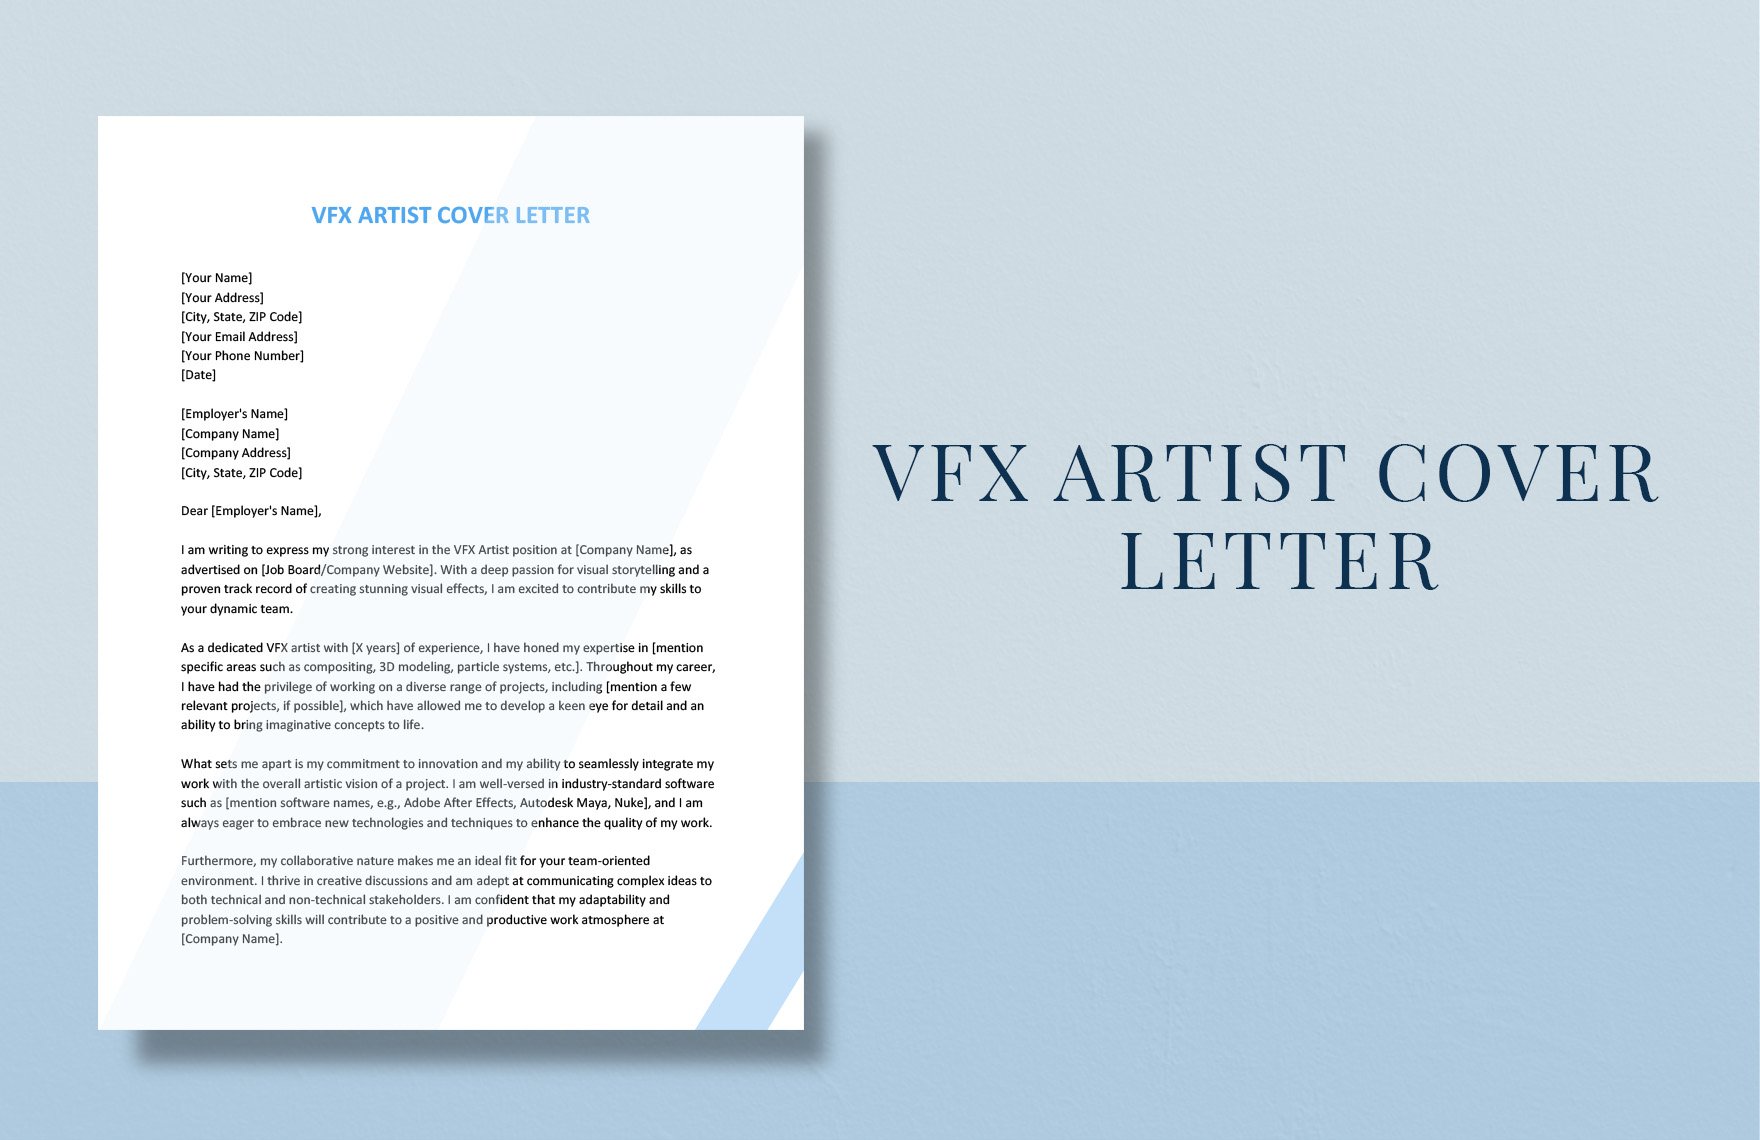 VFX Artist Cover Letter in Word, Google Docs